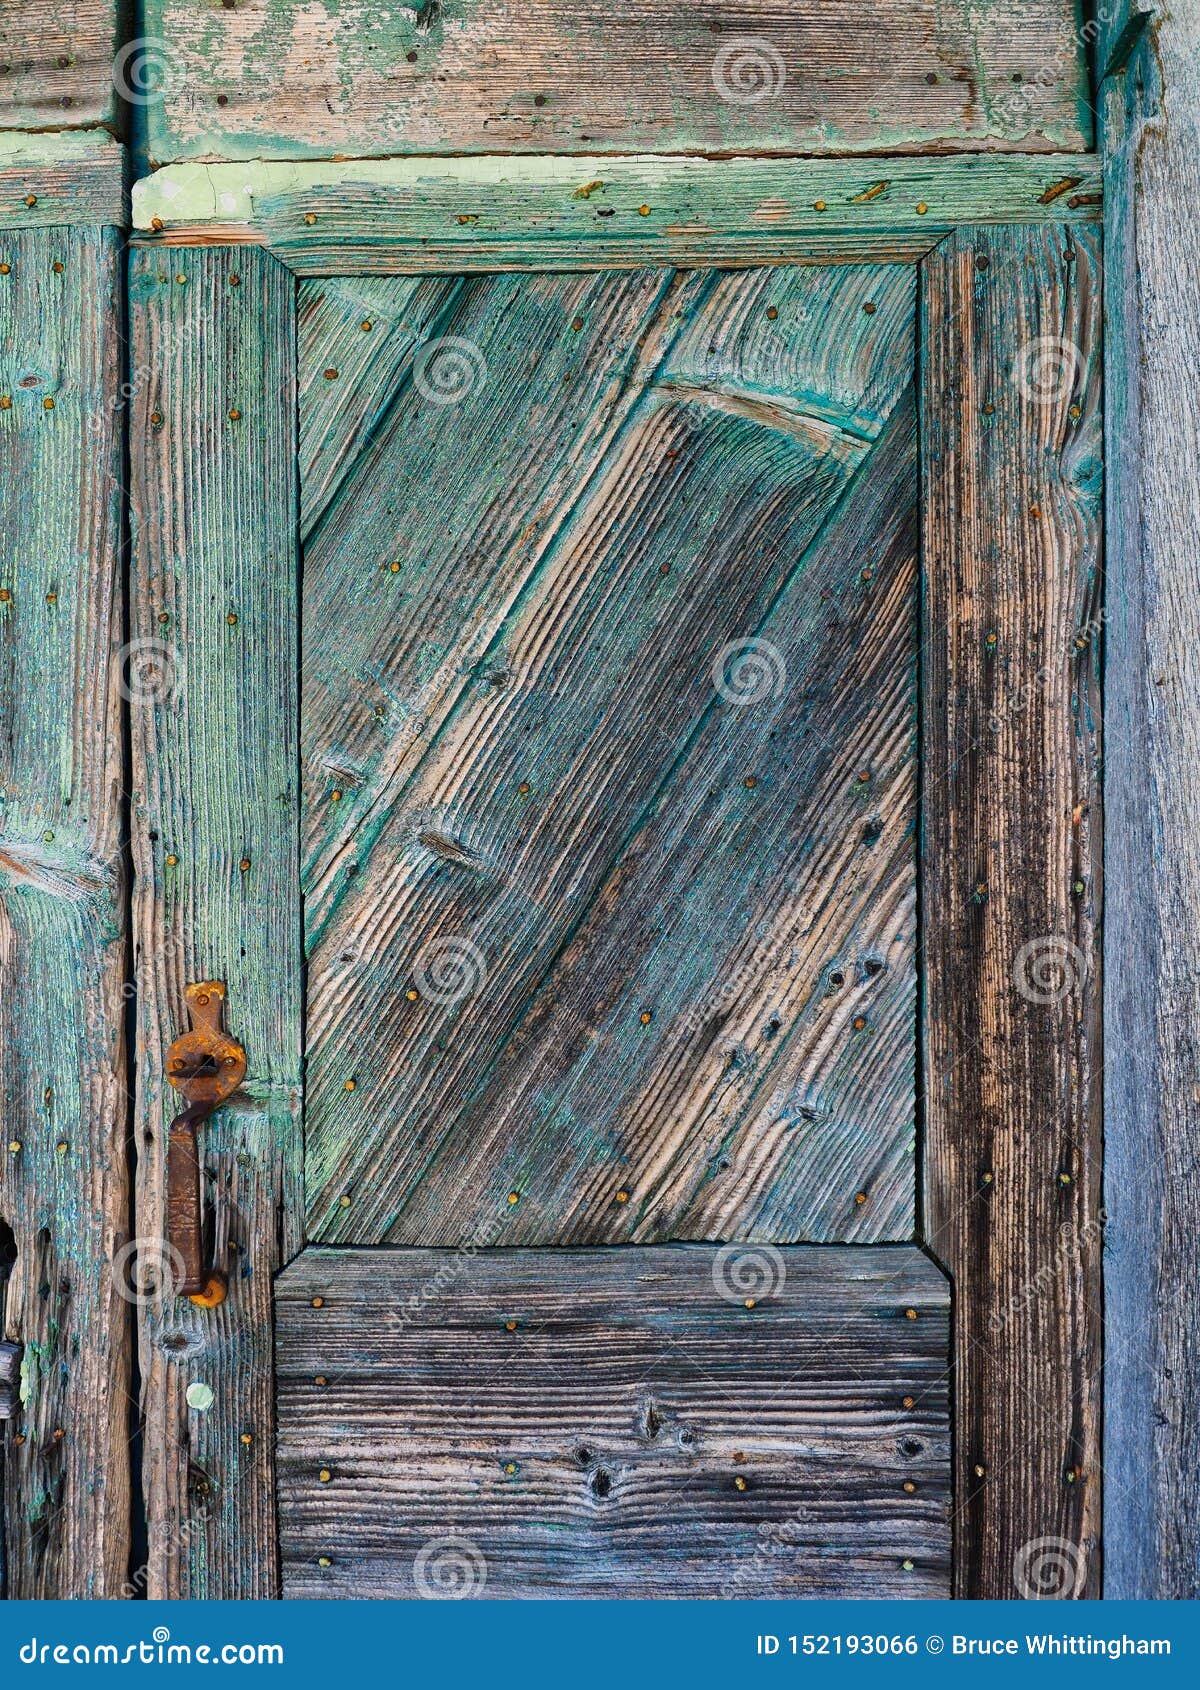 Detalj av den texturerade gamla blått målade trädörren. Detalj av en gammal träingångsdörr, med texturerad urblekt och flagnande blå målarfärg En metafor för torr åldrig flagnande hud, med det crudely bultade dörrhandtaget